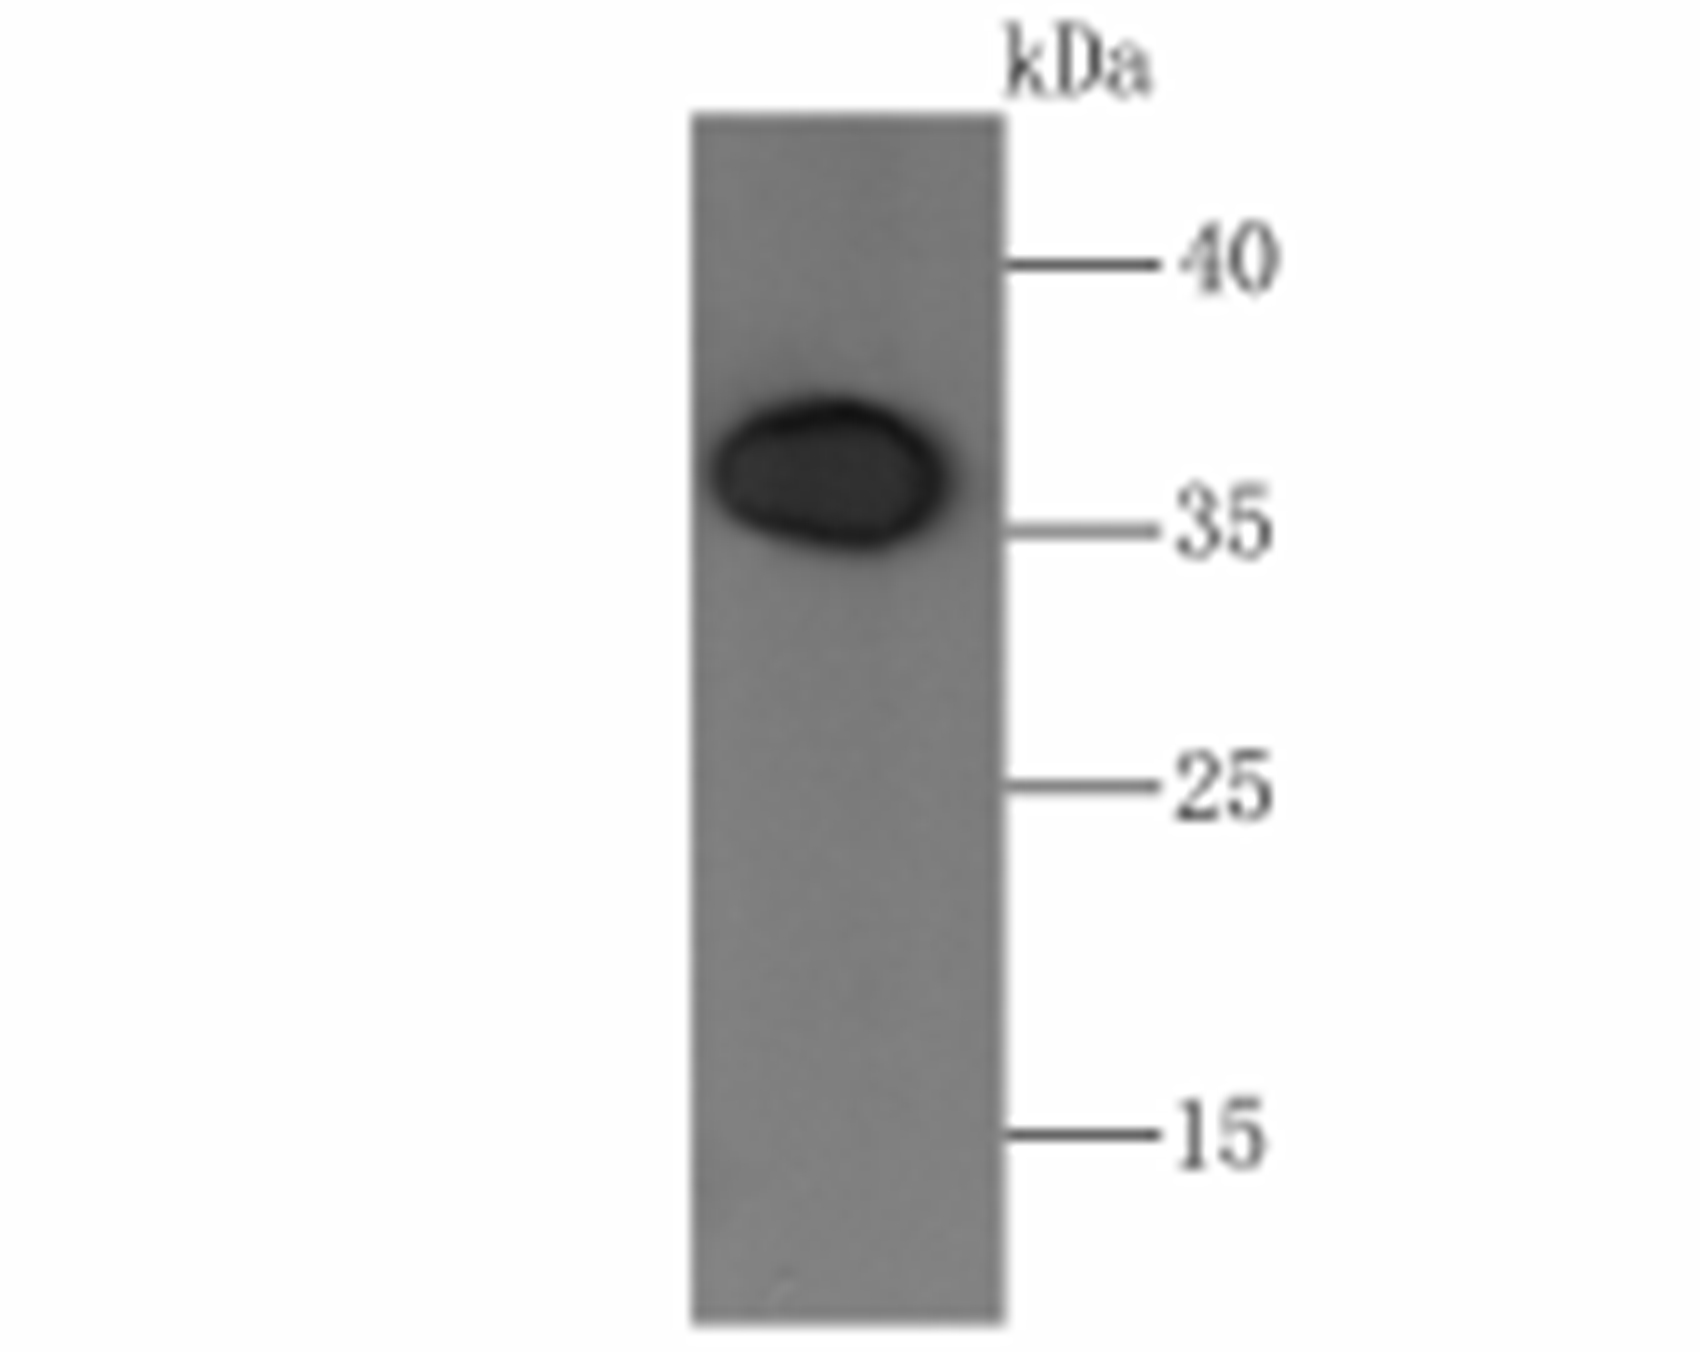 Western blot analysis of Orai1 on PC-3M cell lysate using anti-Orai1 antibody at 1/500 dilution.